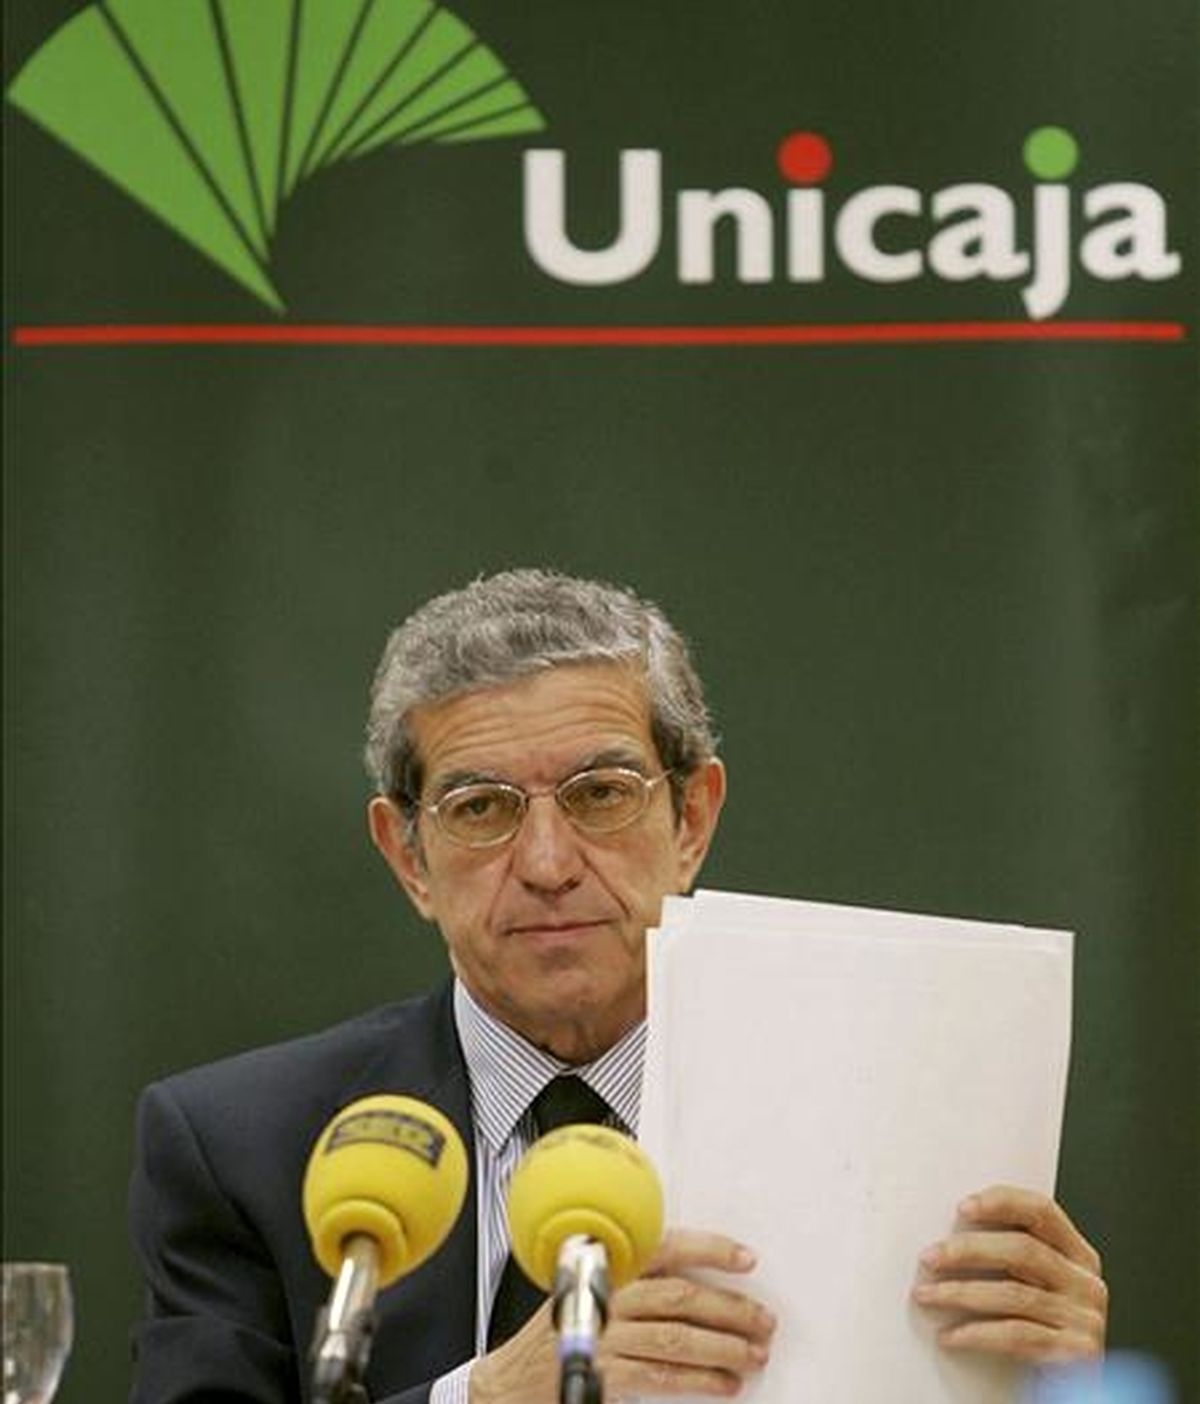 En la imagen, el presidente de Unicaja, Braulio Medel, durante una rueda de prensa en Cádiz. EFE/Archivo